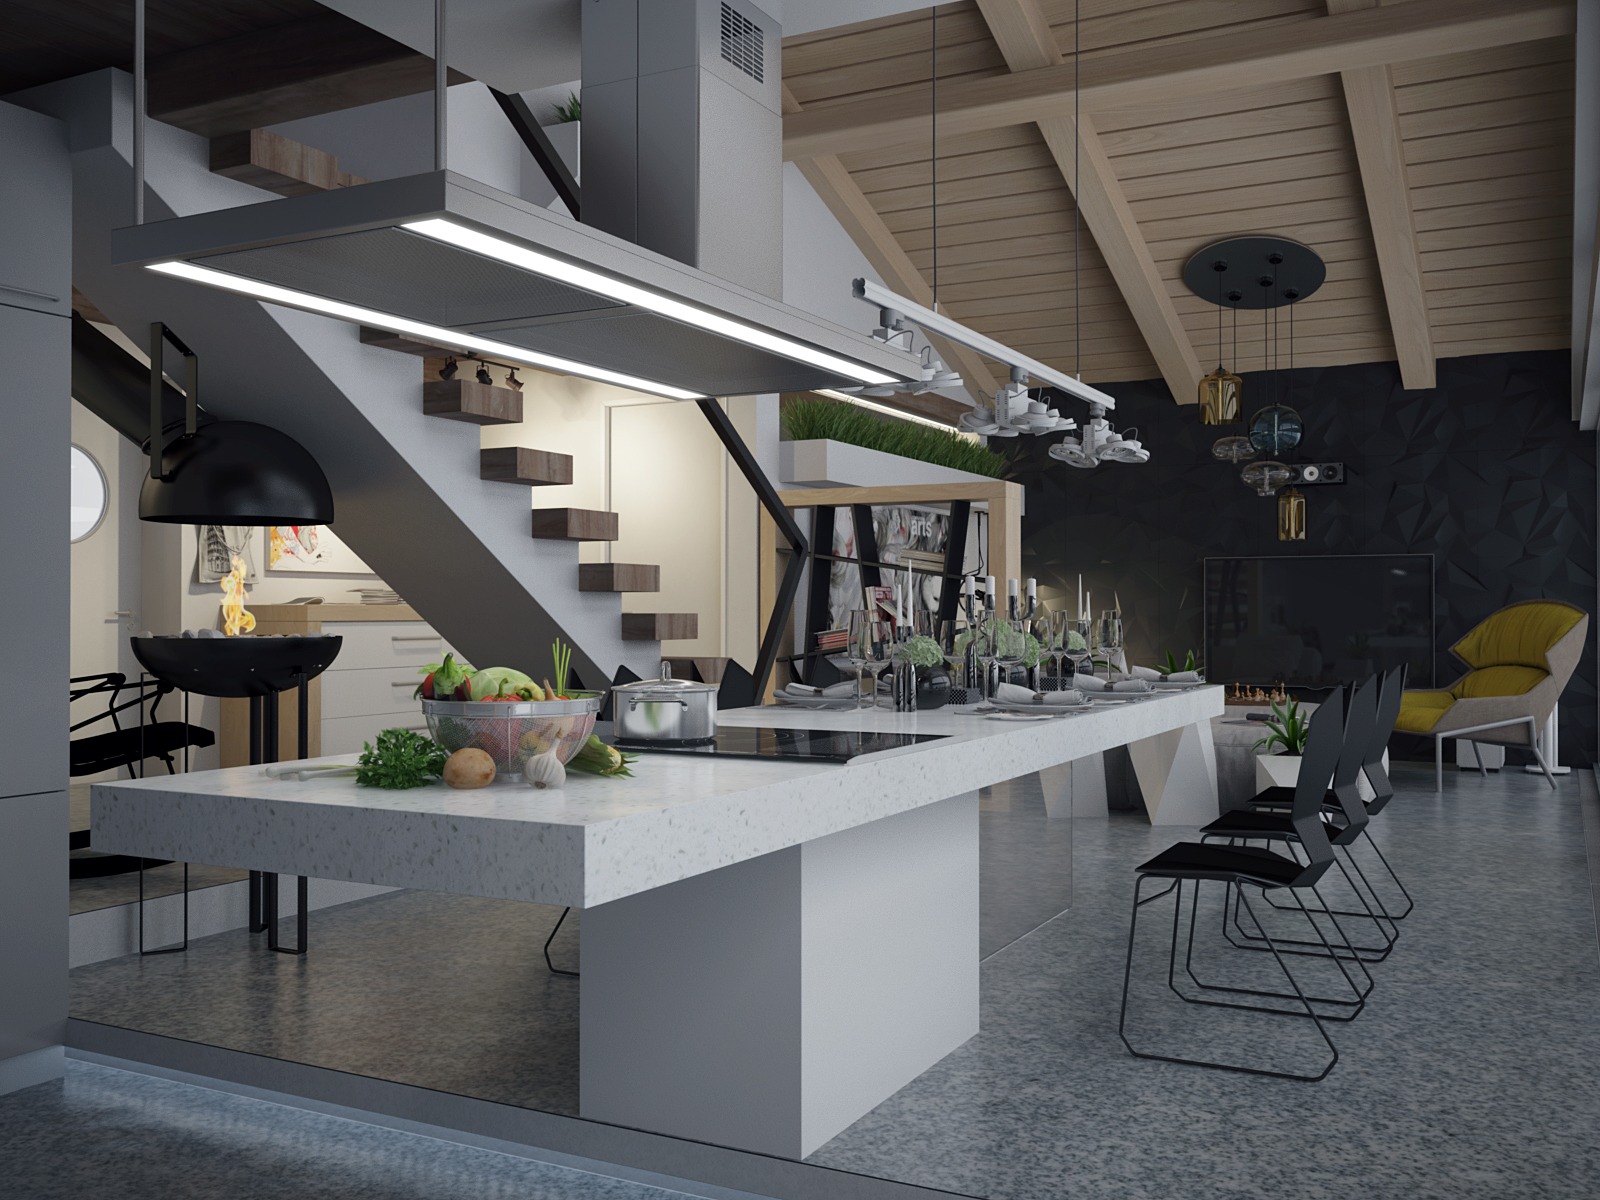 big-kitchen-design | interior design ideas